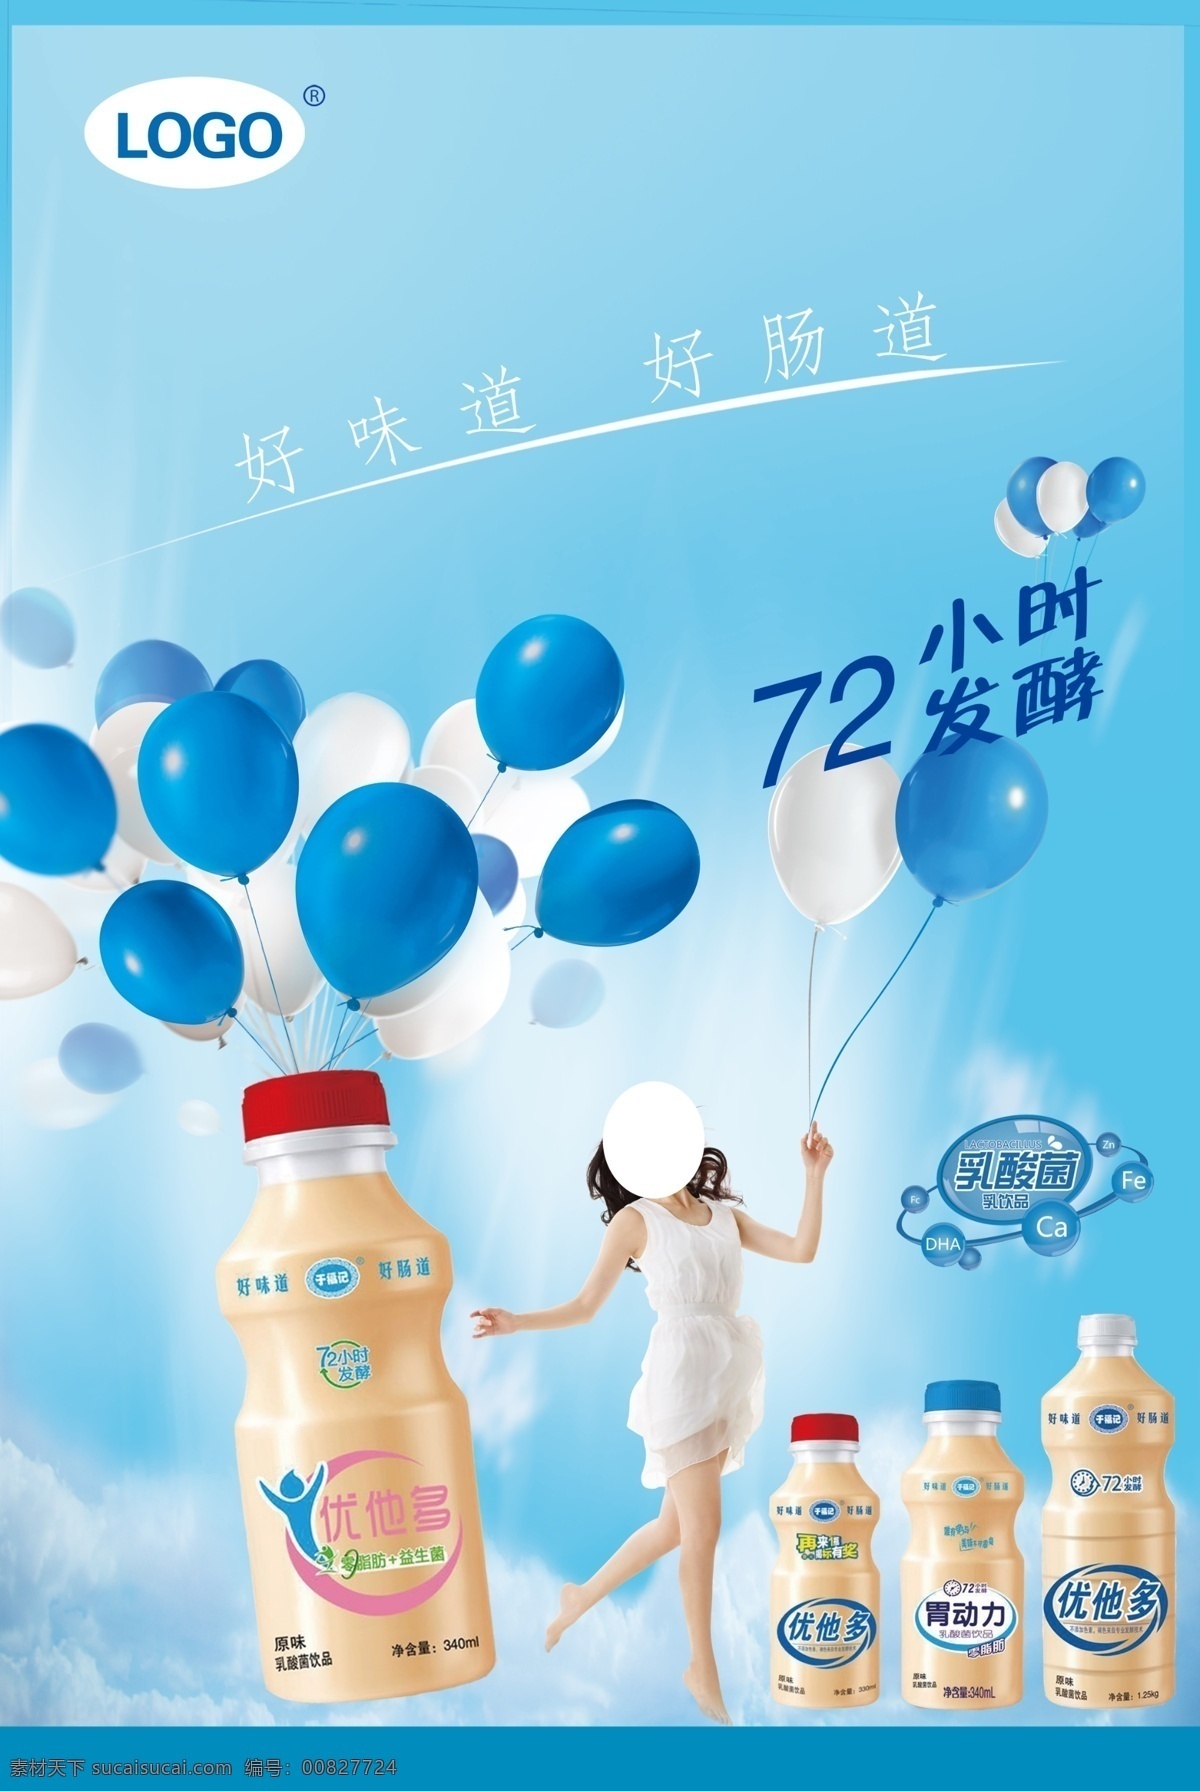 酸奶海报 酸奶广告 海报 奶产品 瓶奶装 浅蓝色